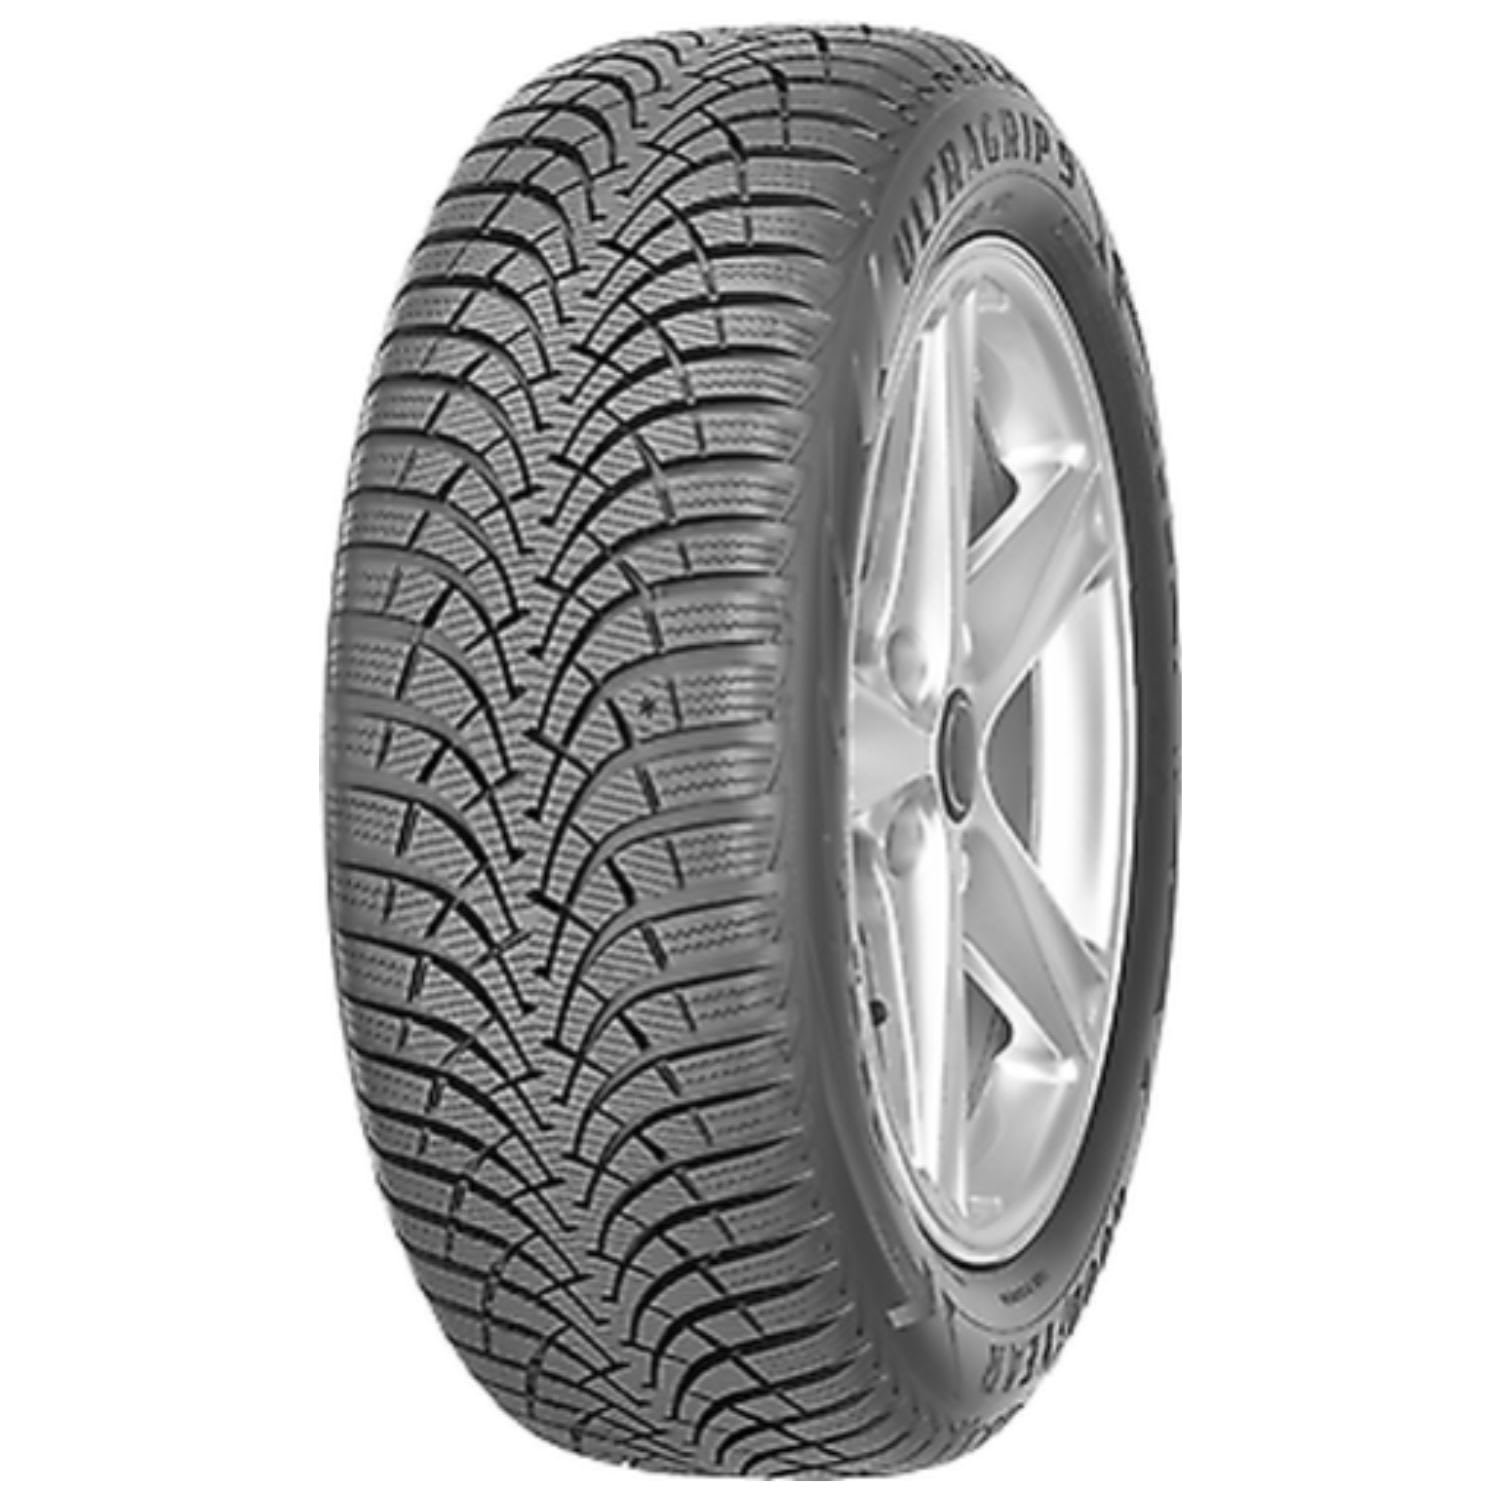 Plus Buy Tires SimpleTire Ultra Goodyear 9 | Grip Online